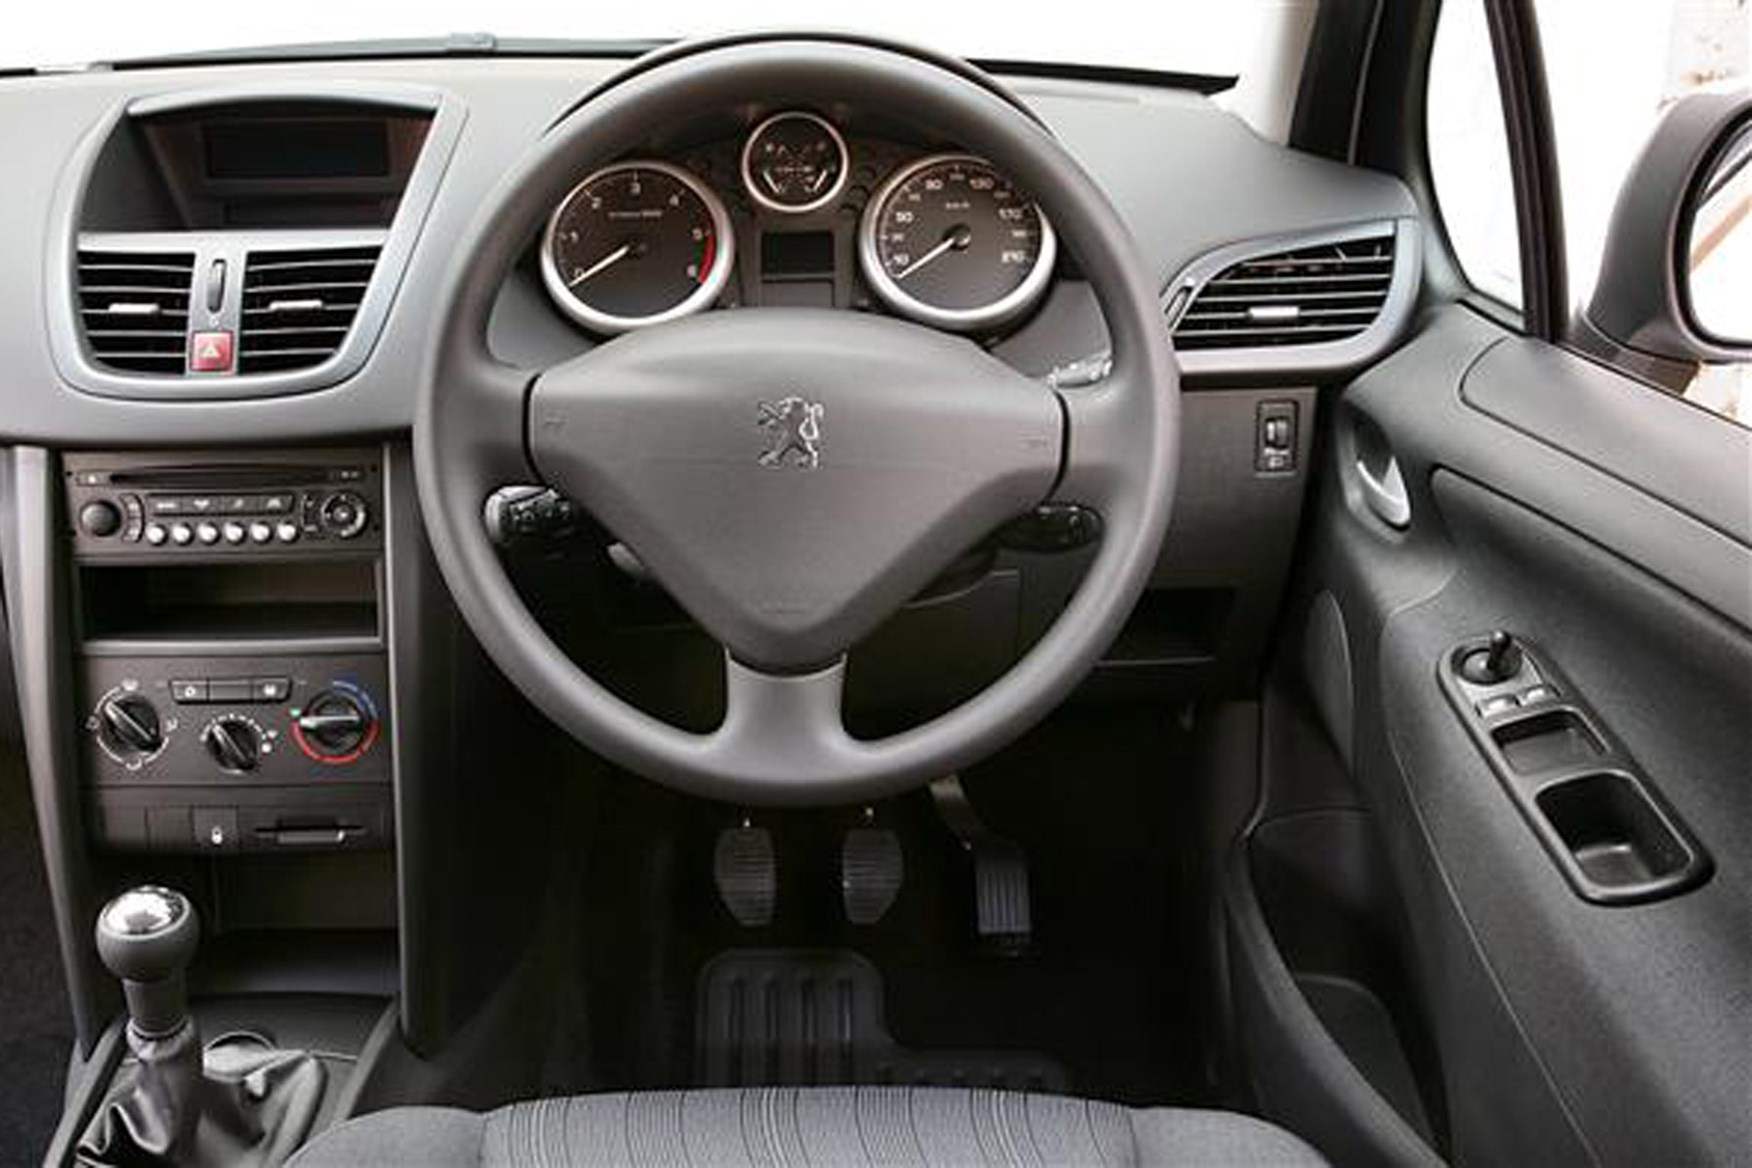 Peugeot 207 Van 1.6 HDI test, Fleet News, Fleet Van